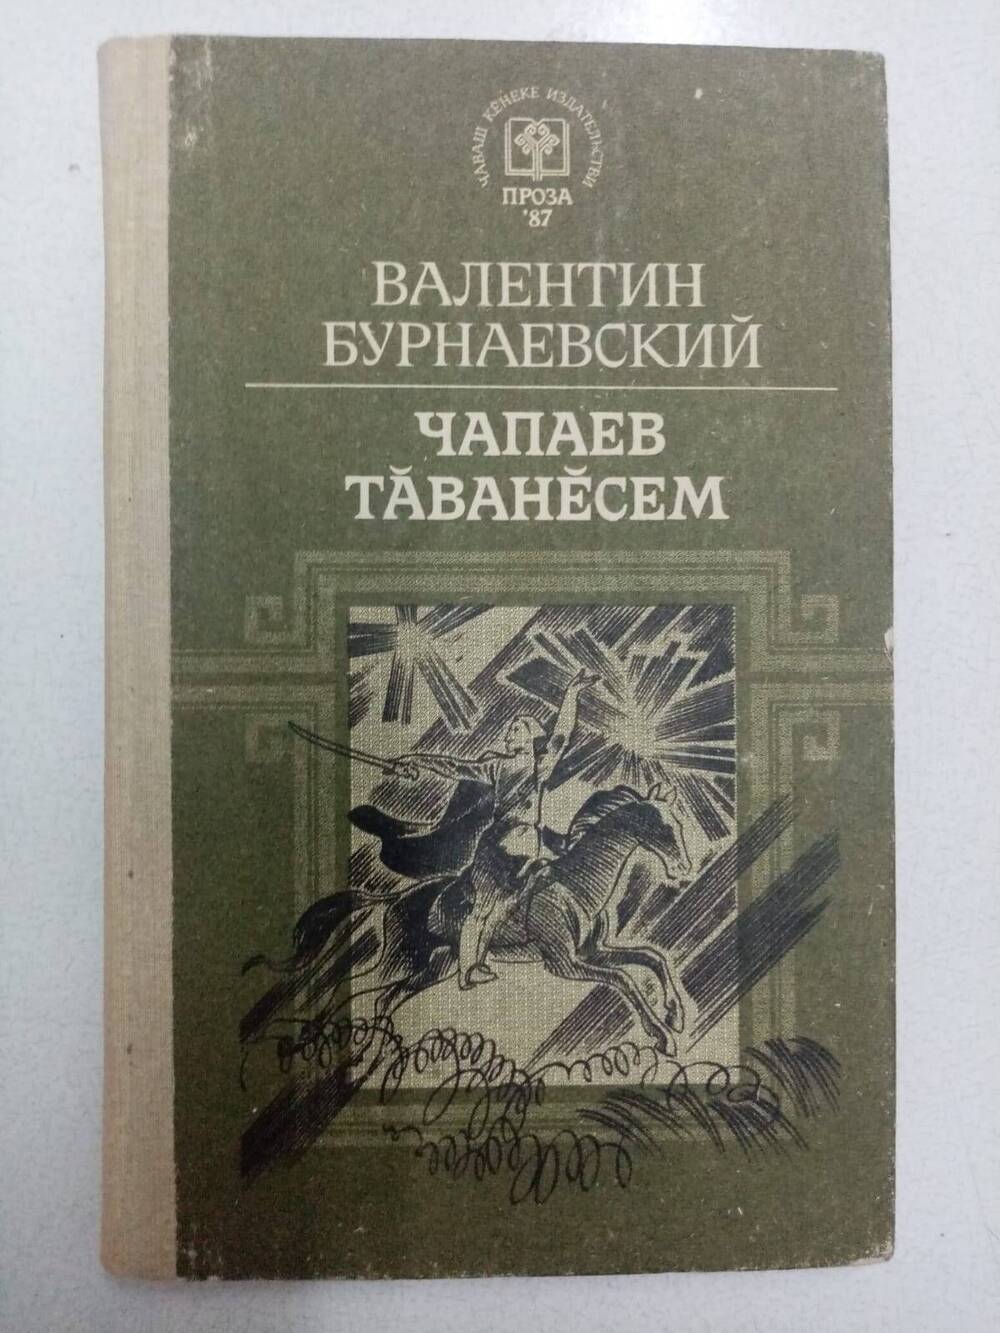 Книга Бурнаевский В.Г. Чапаев тăванесем очерксемпе калавсем